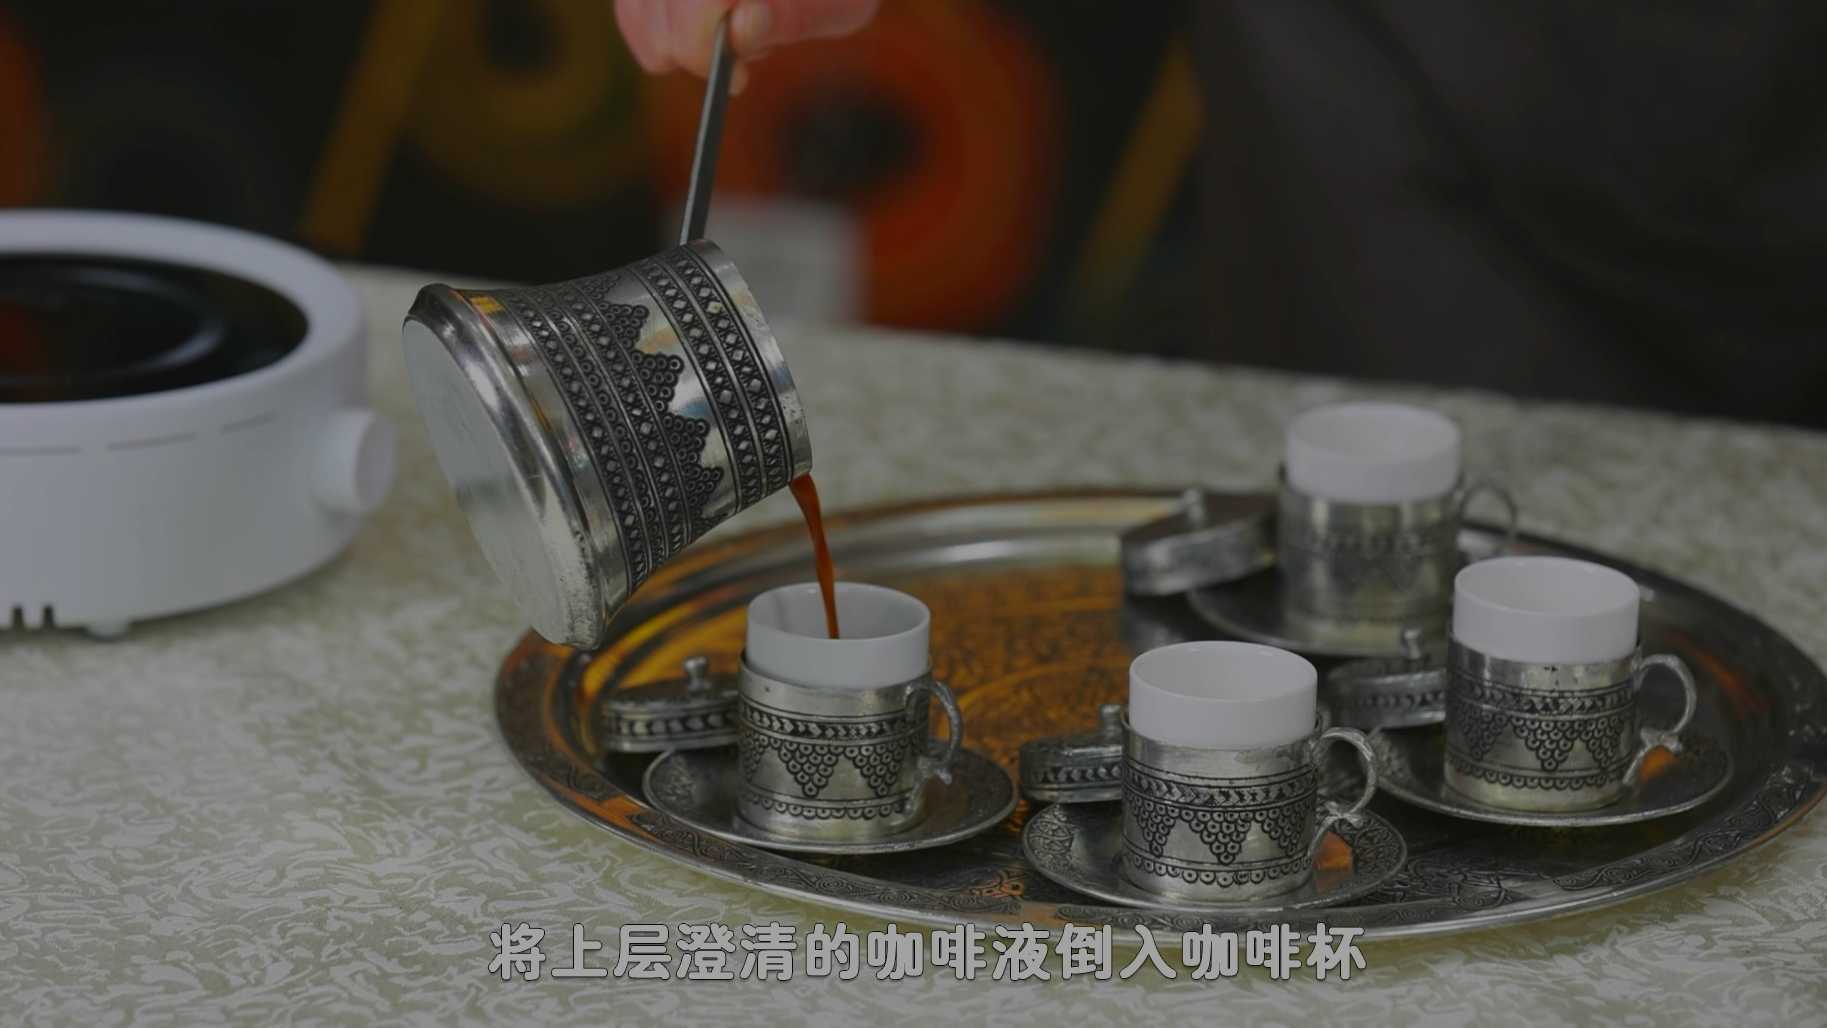 咖啡制作  制作土耳其咖啡  北京外事学校课程录制